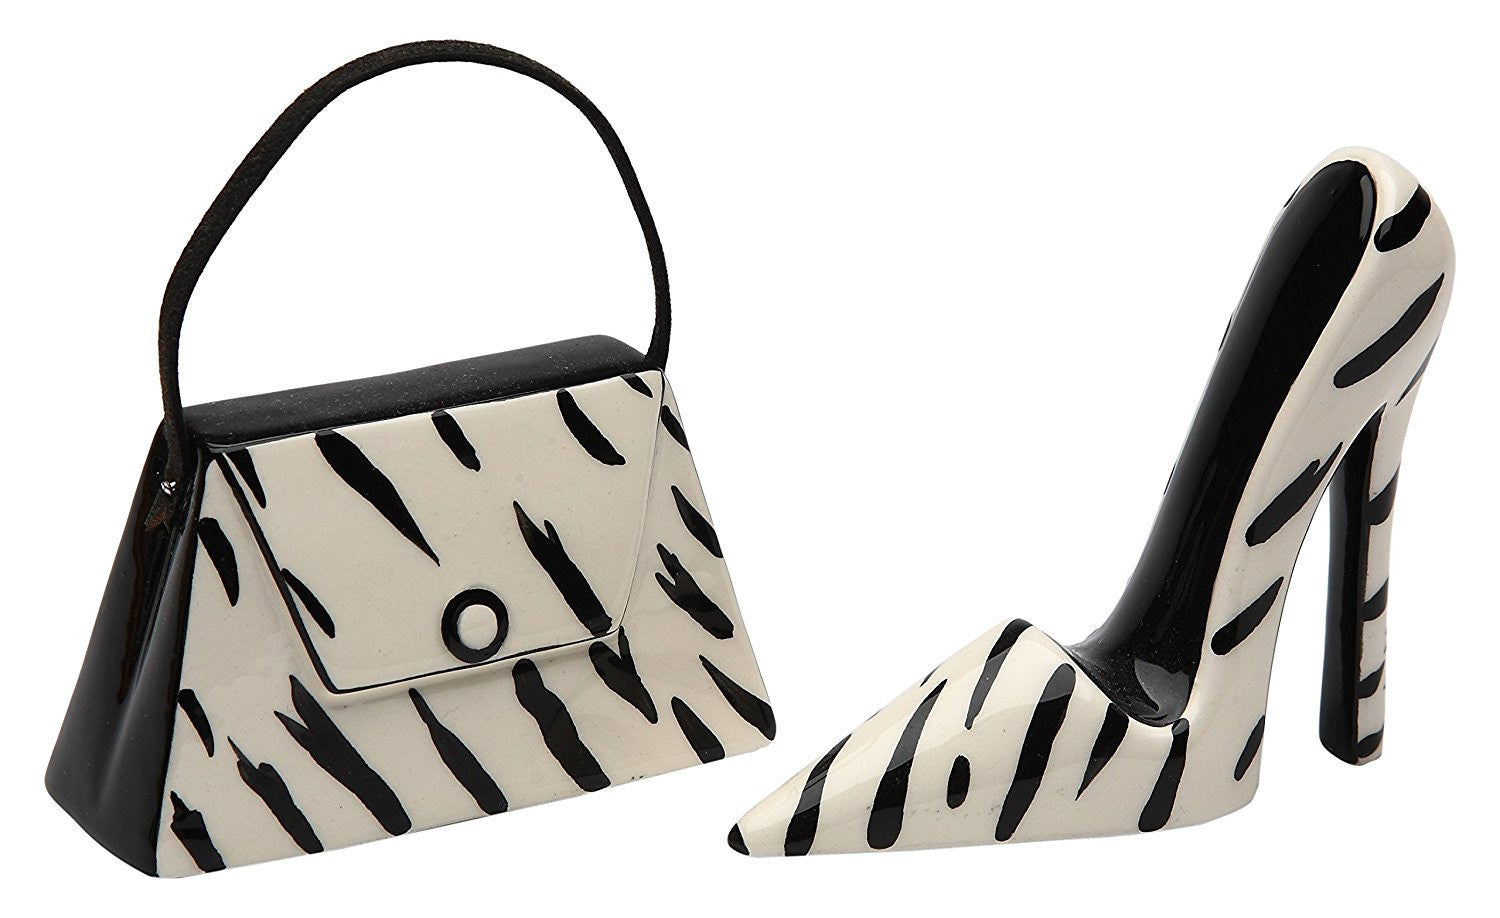 zebra print high heels